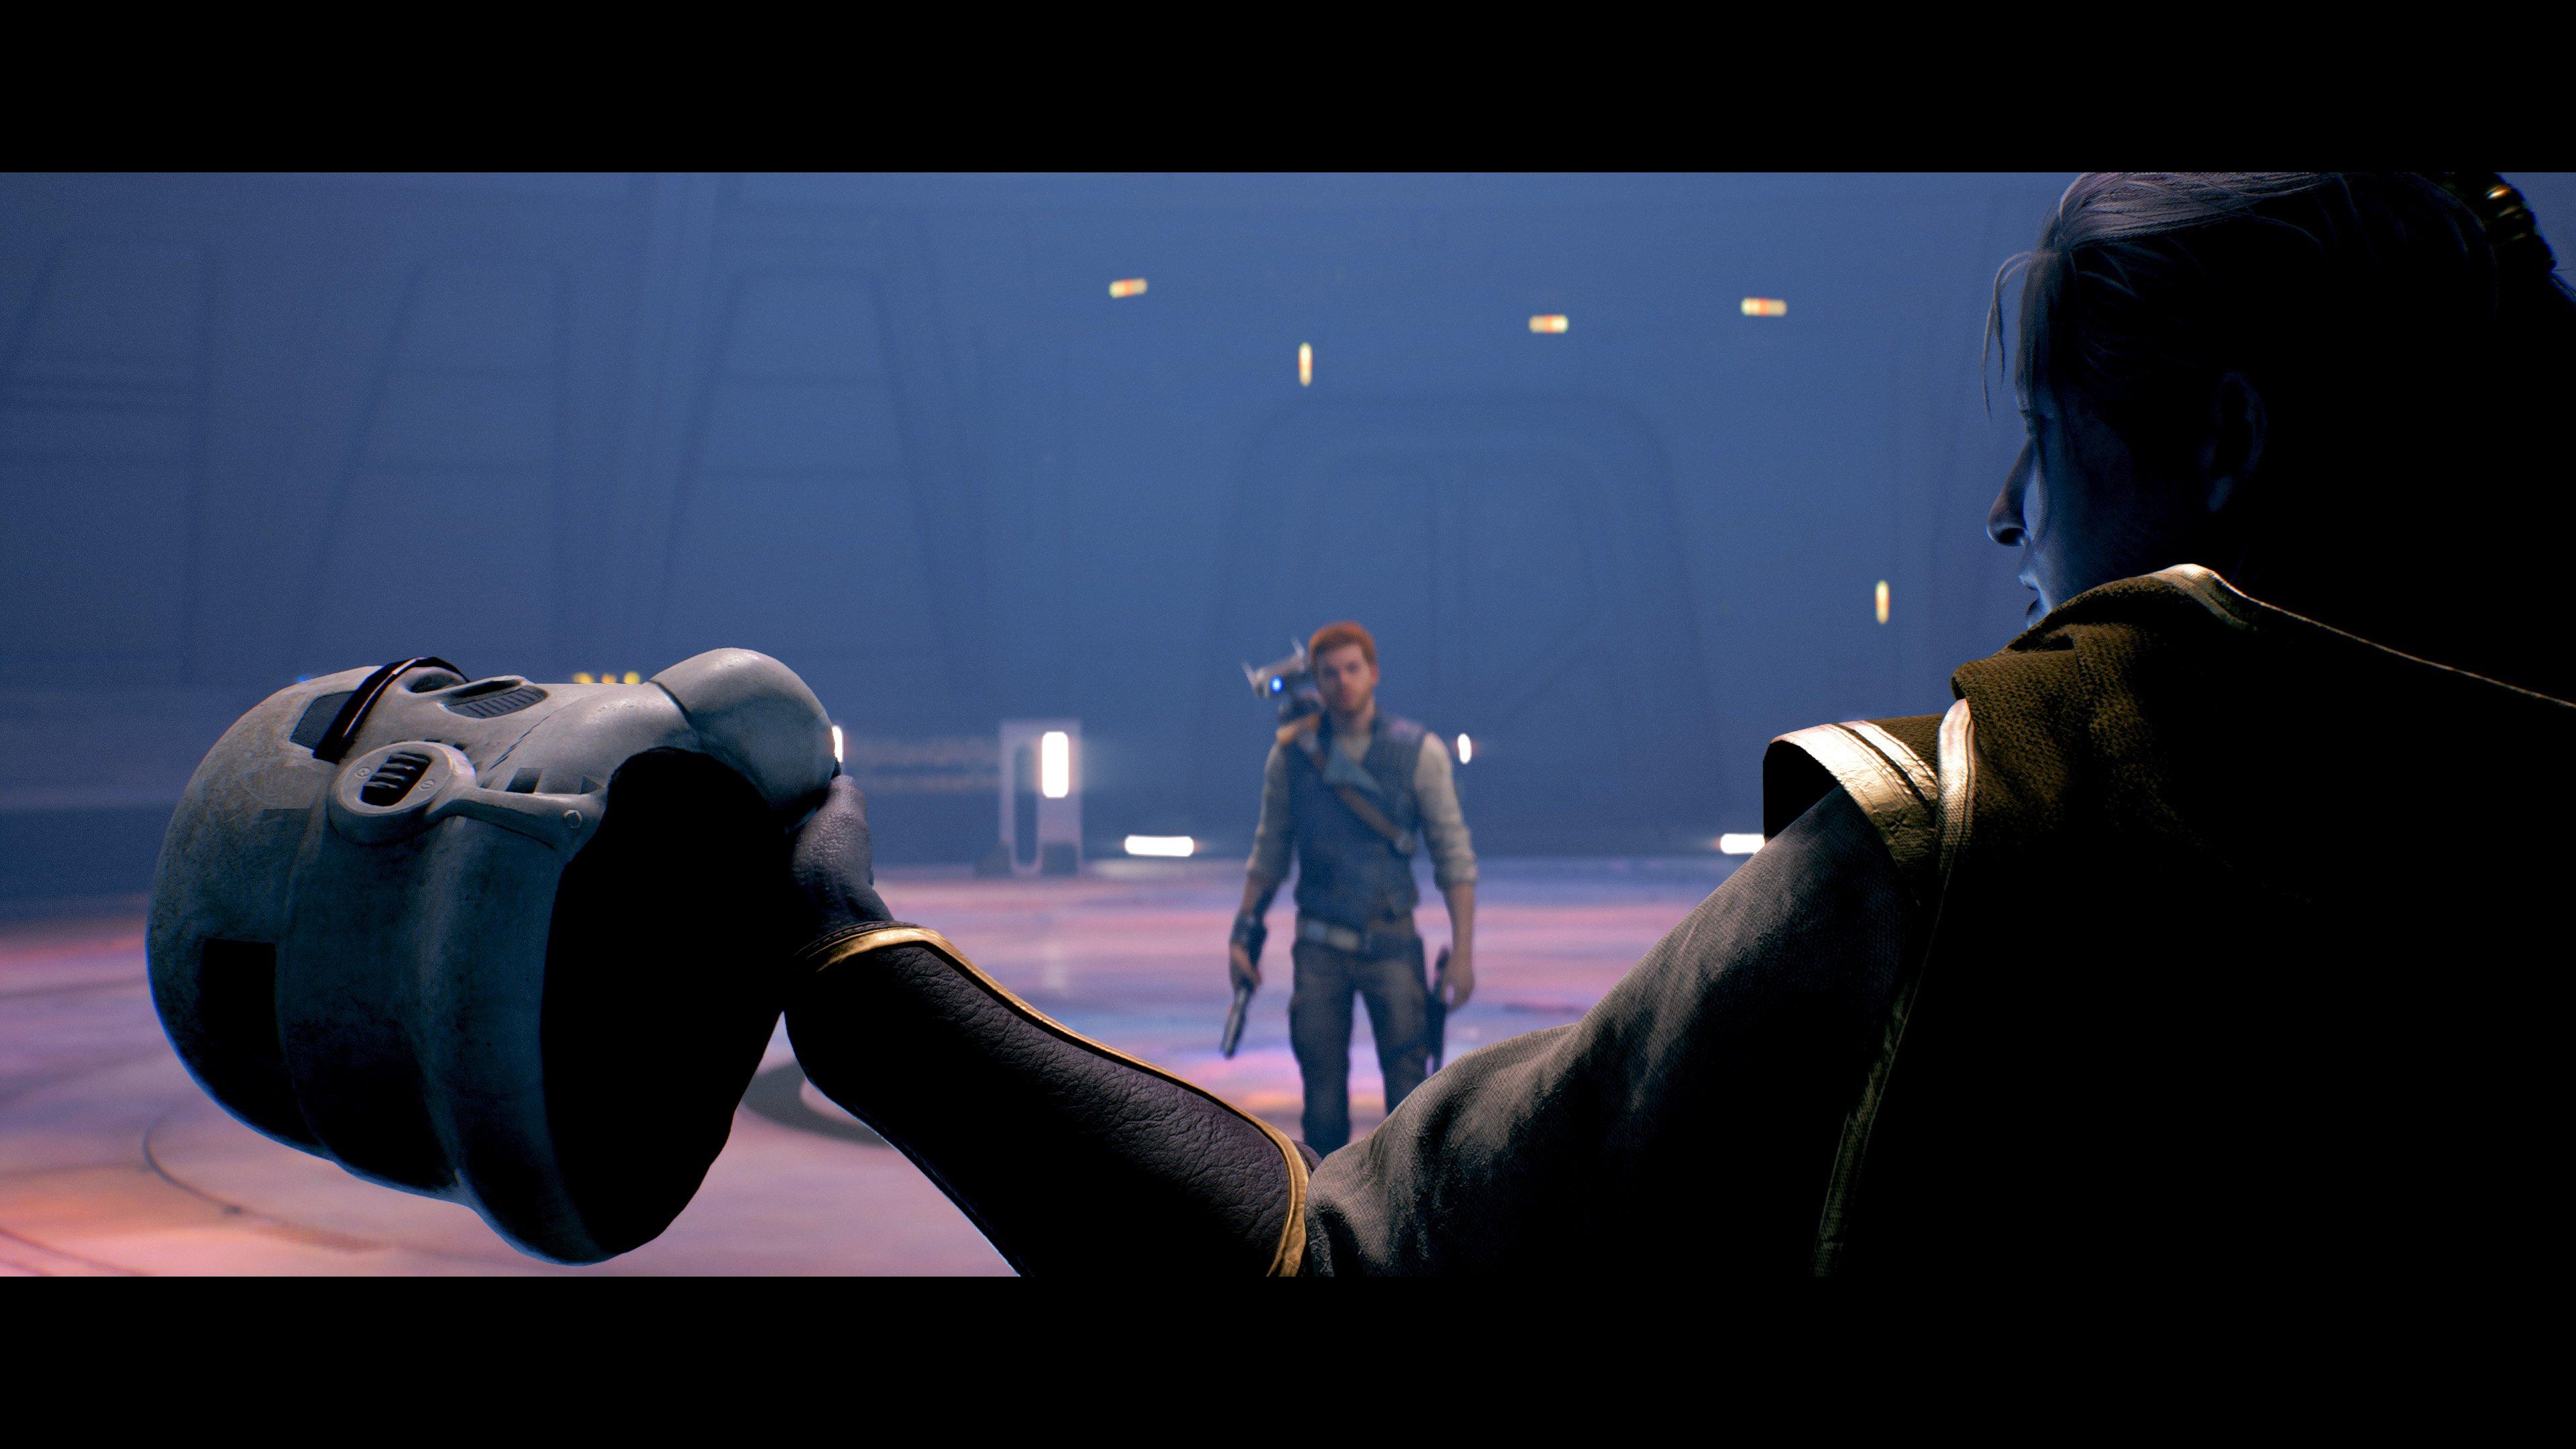 Star Wars Jedi: Survivor Delayed To April - Game Informer